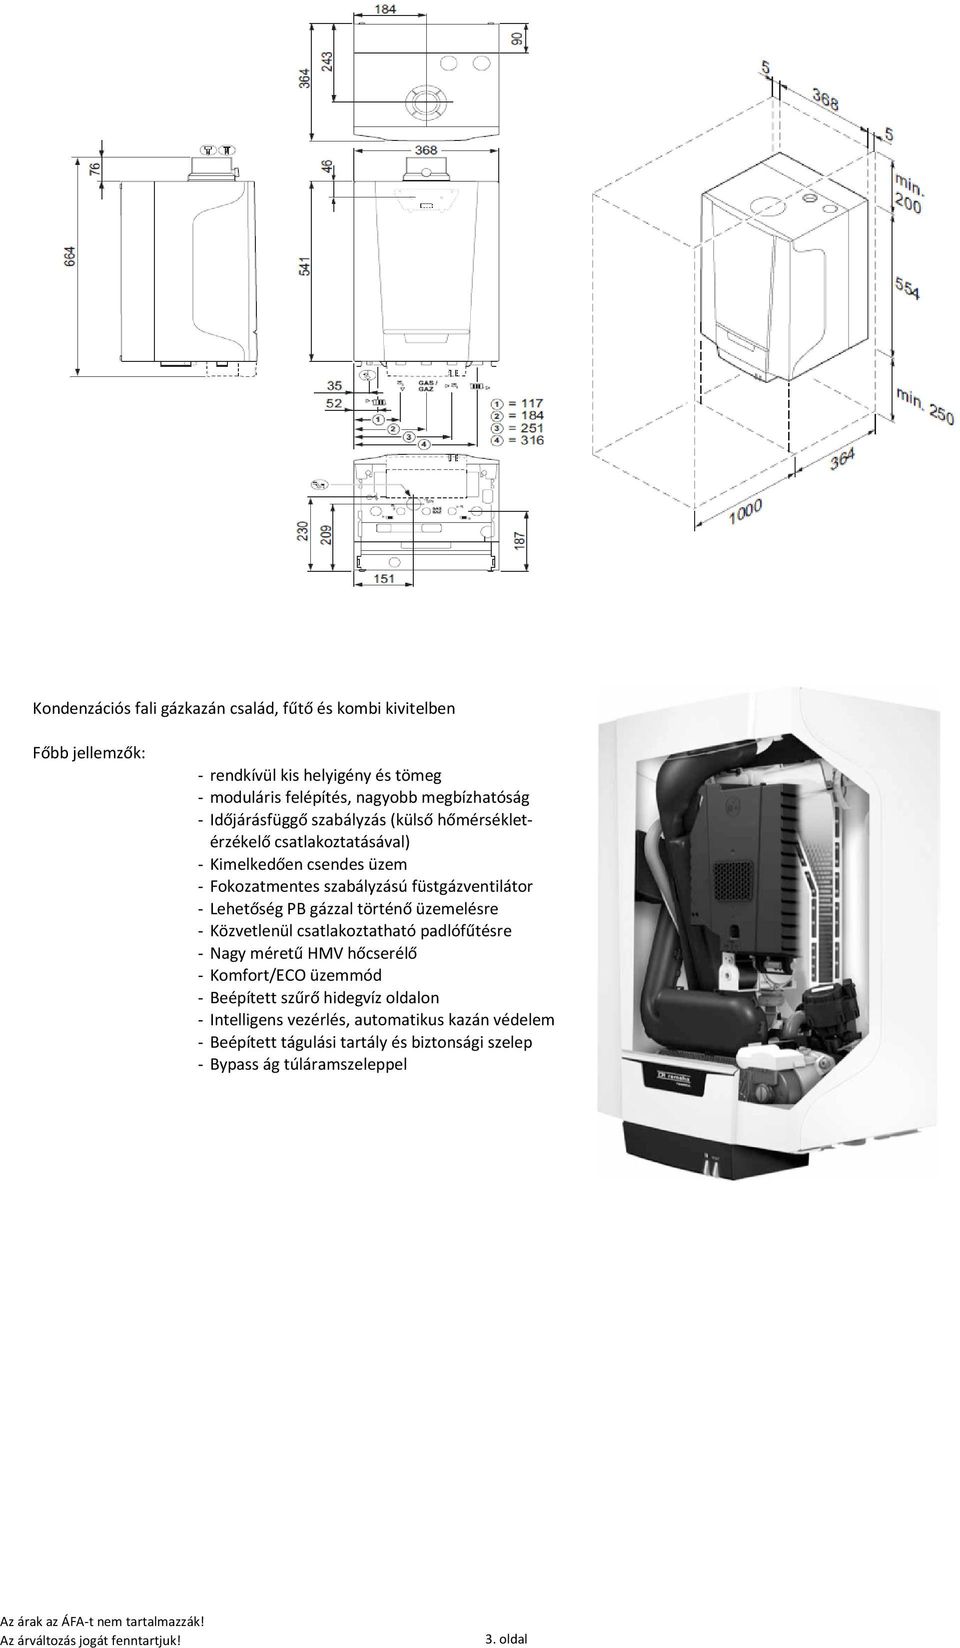 füstgázventilátor - Lehetőség PB gázzal történő üzemelésre - Közvetlenül csatlakoztatható padlófűtésre - Nagy méretű HMV hőcserélő - Komfort/ECO üzemmód